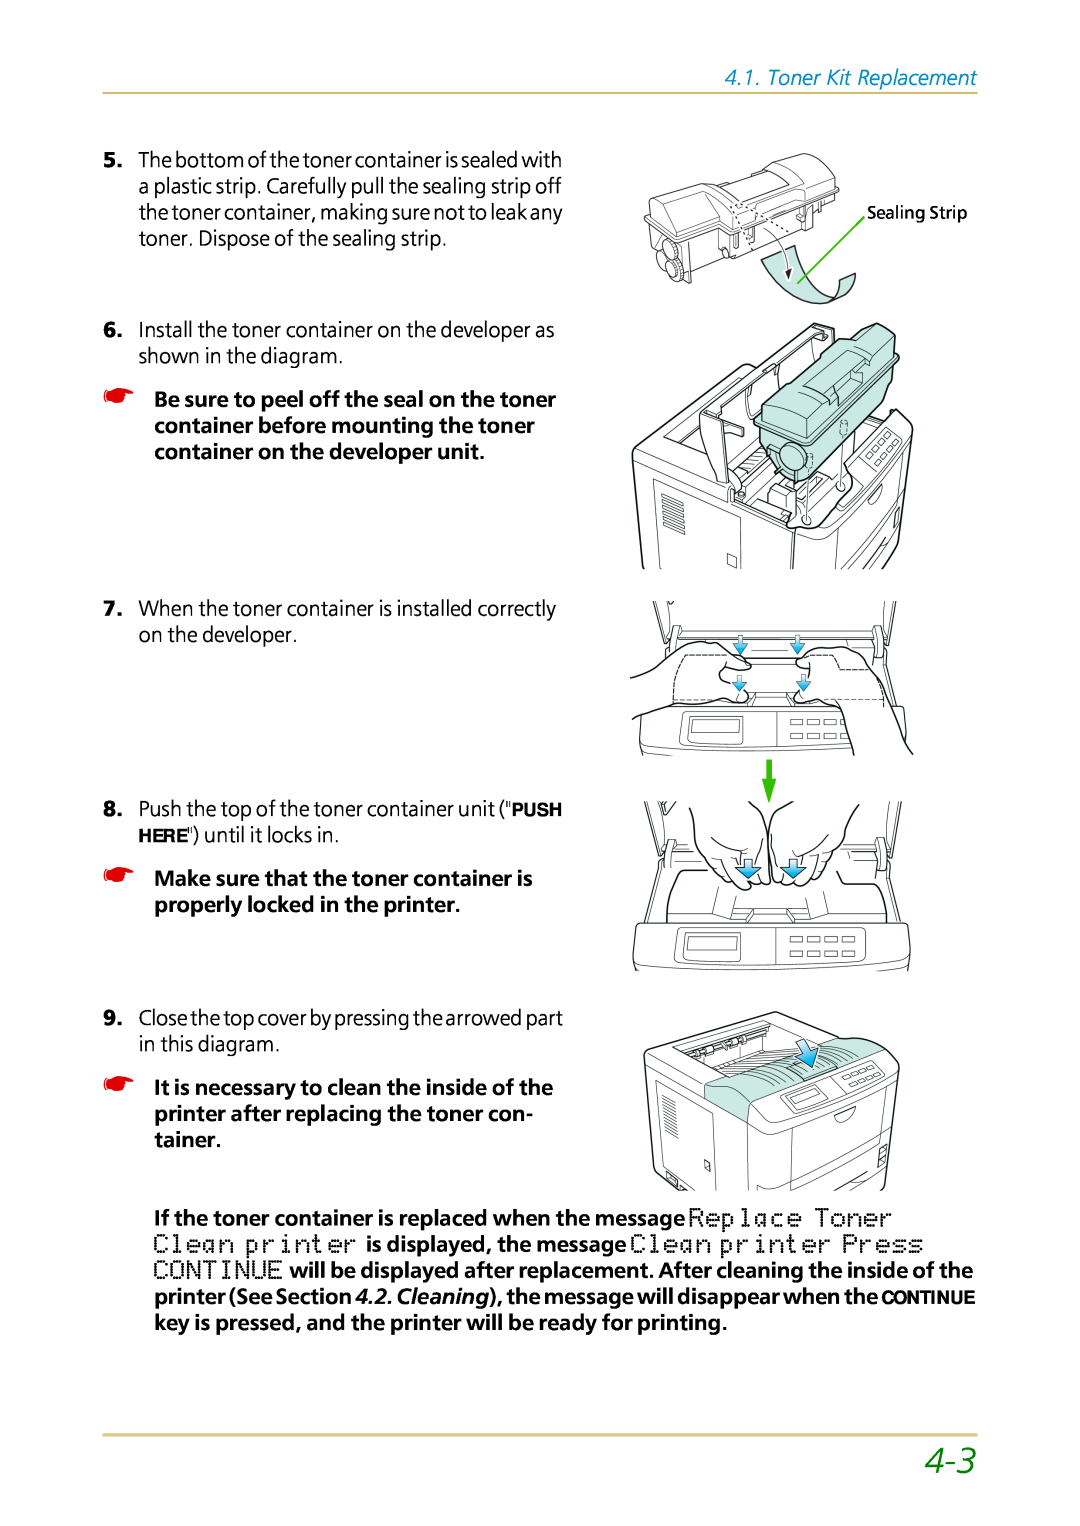 Kyocera FS-1700 user manual Toner Kit Replacement, Sealing Strip 